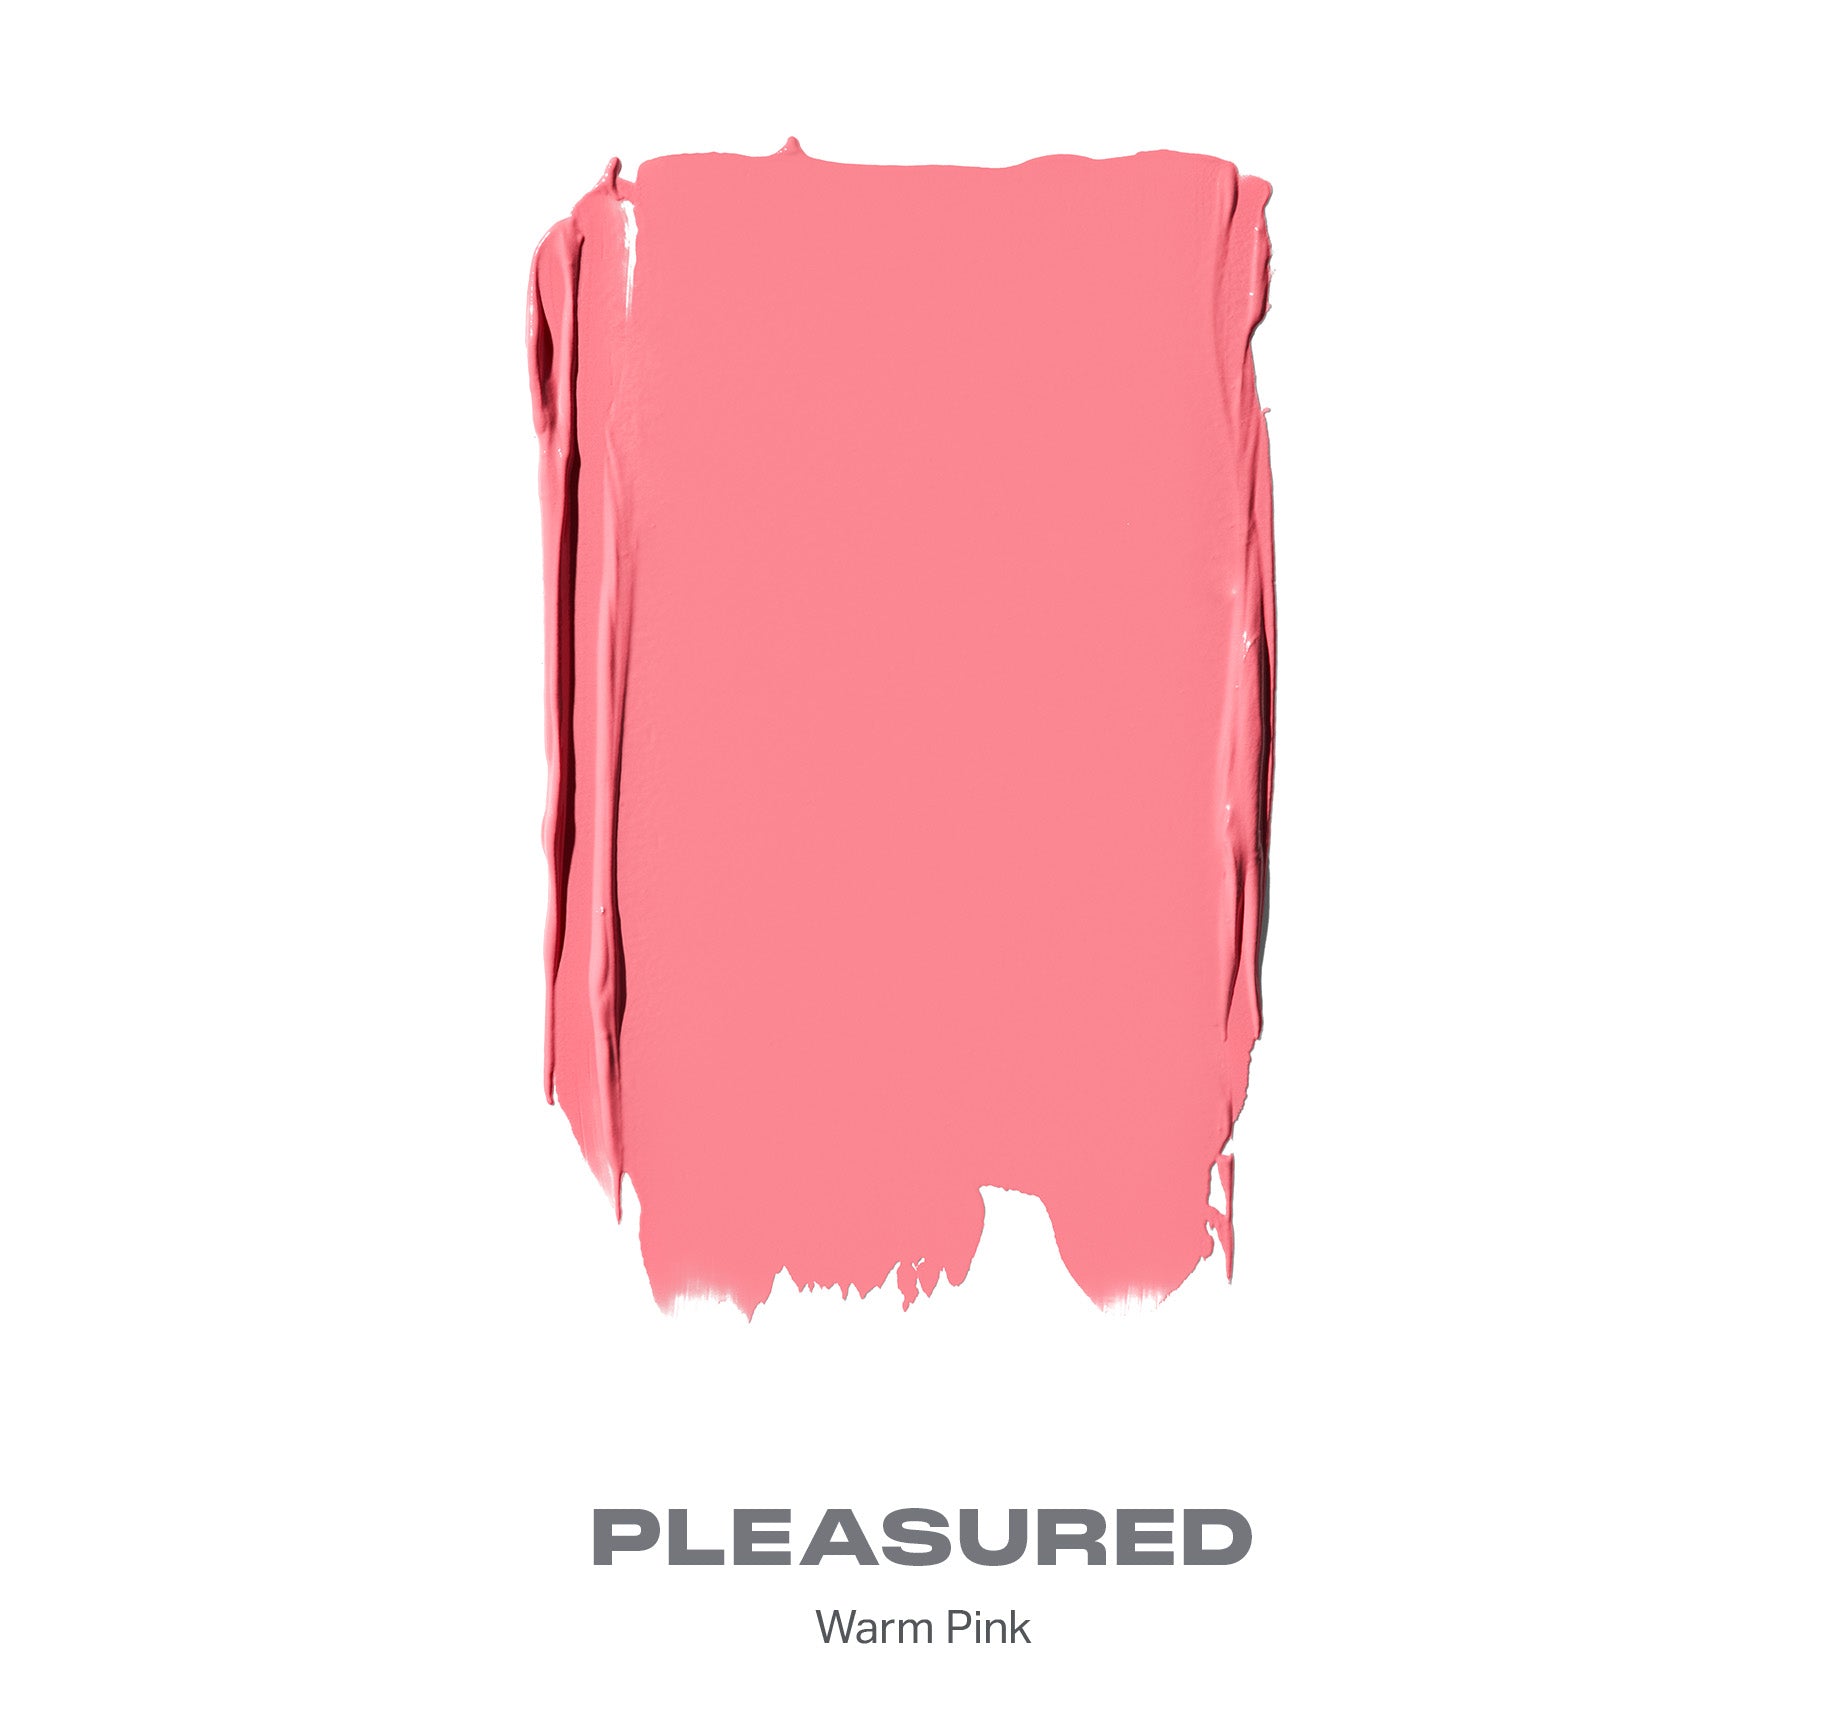 Huephoric Rush 3-in-1 Silk Blush - Pleasured - Image 2